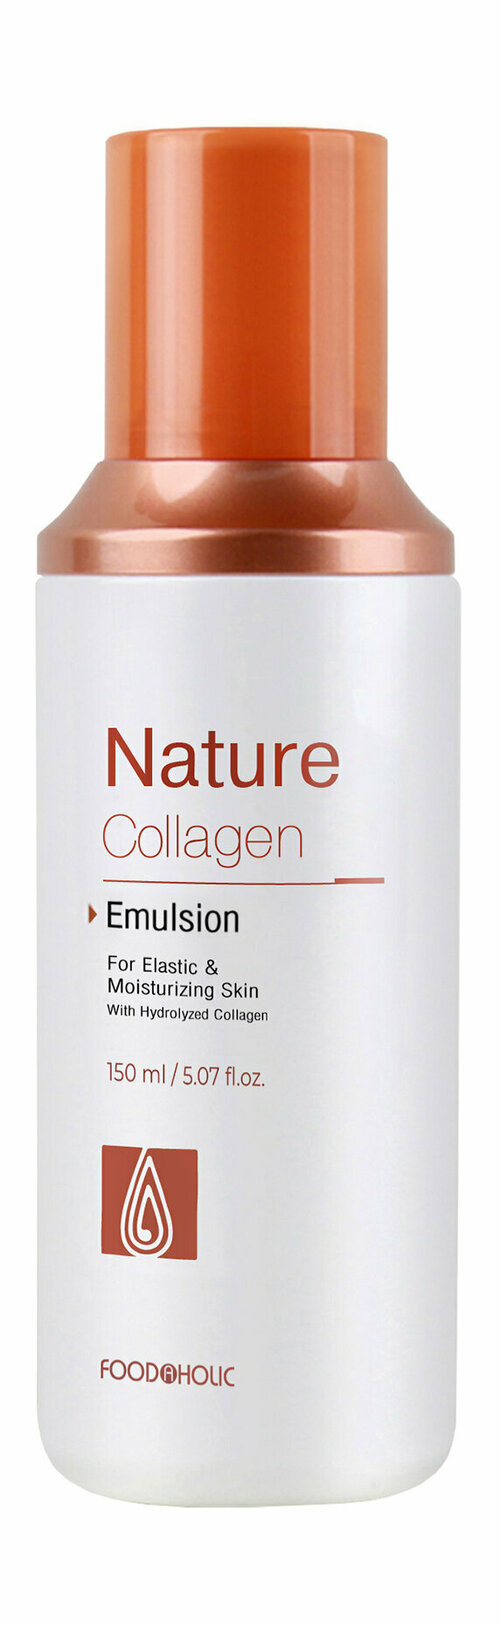 Омолаживающая эмульсия для лица с коллагеном Food a Holic Nature Collagen Emulsion